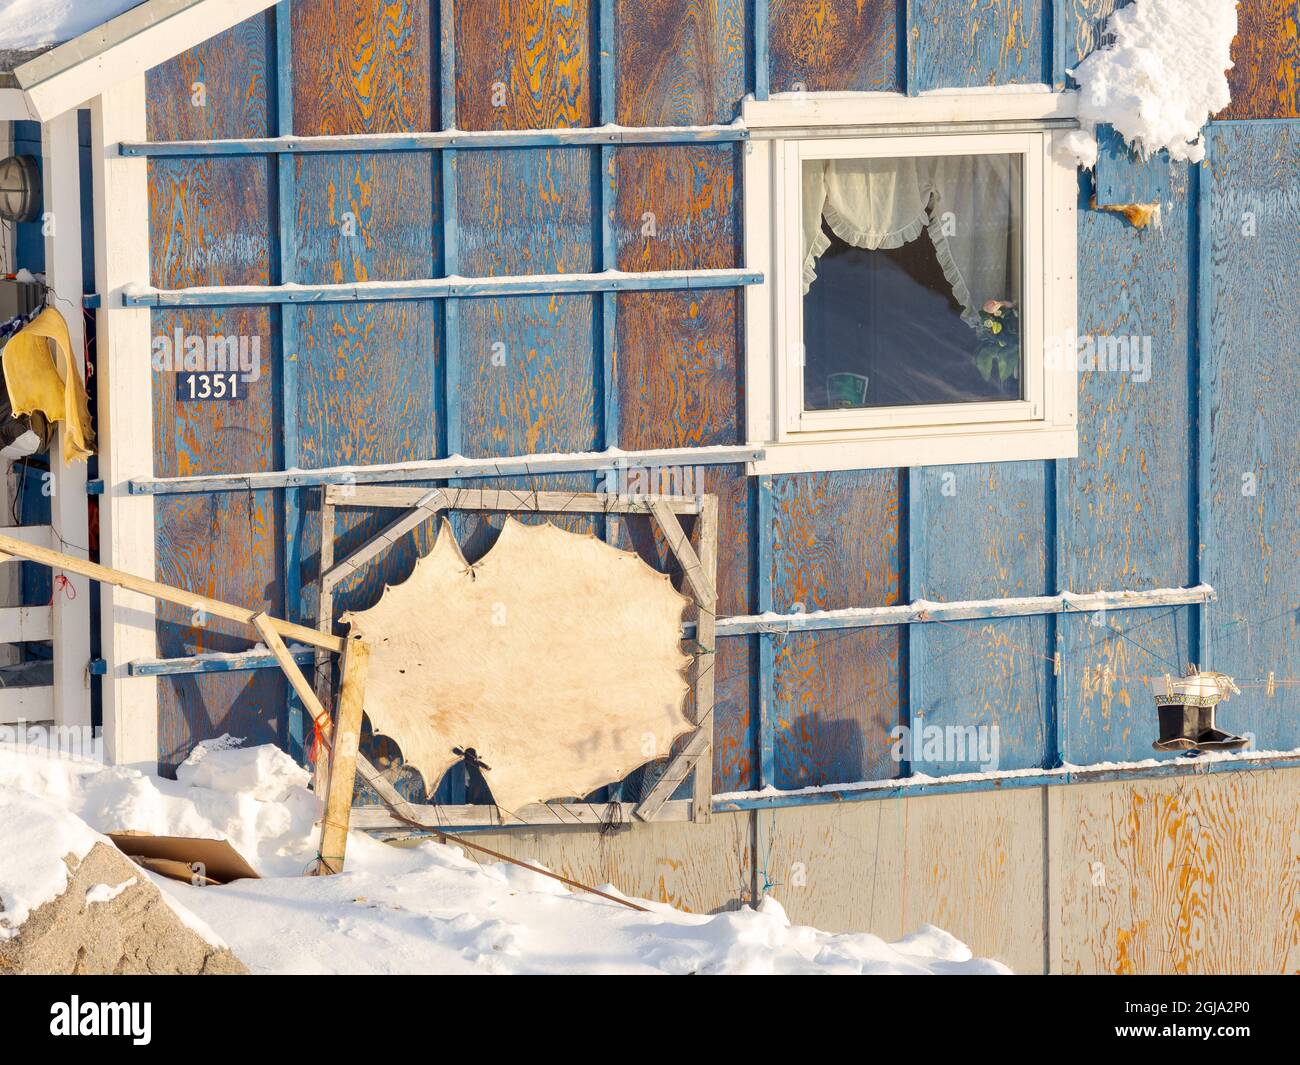 Piel de un sello. La tradicional y remota aldea de los inuit groenlandeses Kullorsuaq, Melville Bay, Groenlandia, territorio danés. (Sólo para uso editorial) Foto de stock